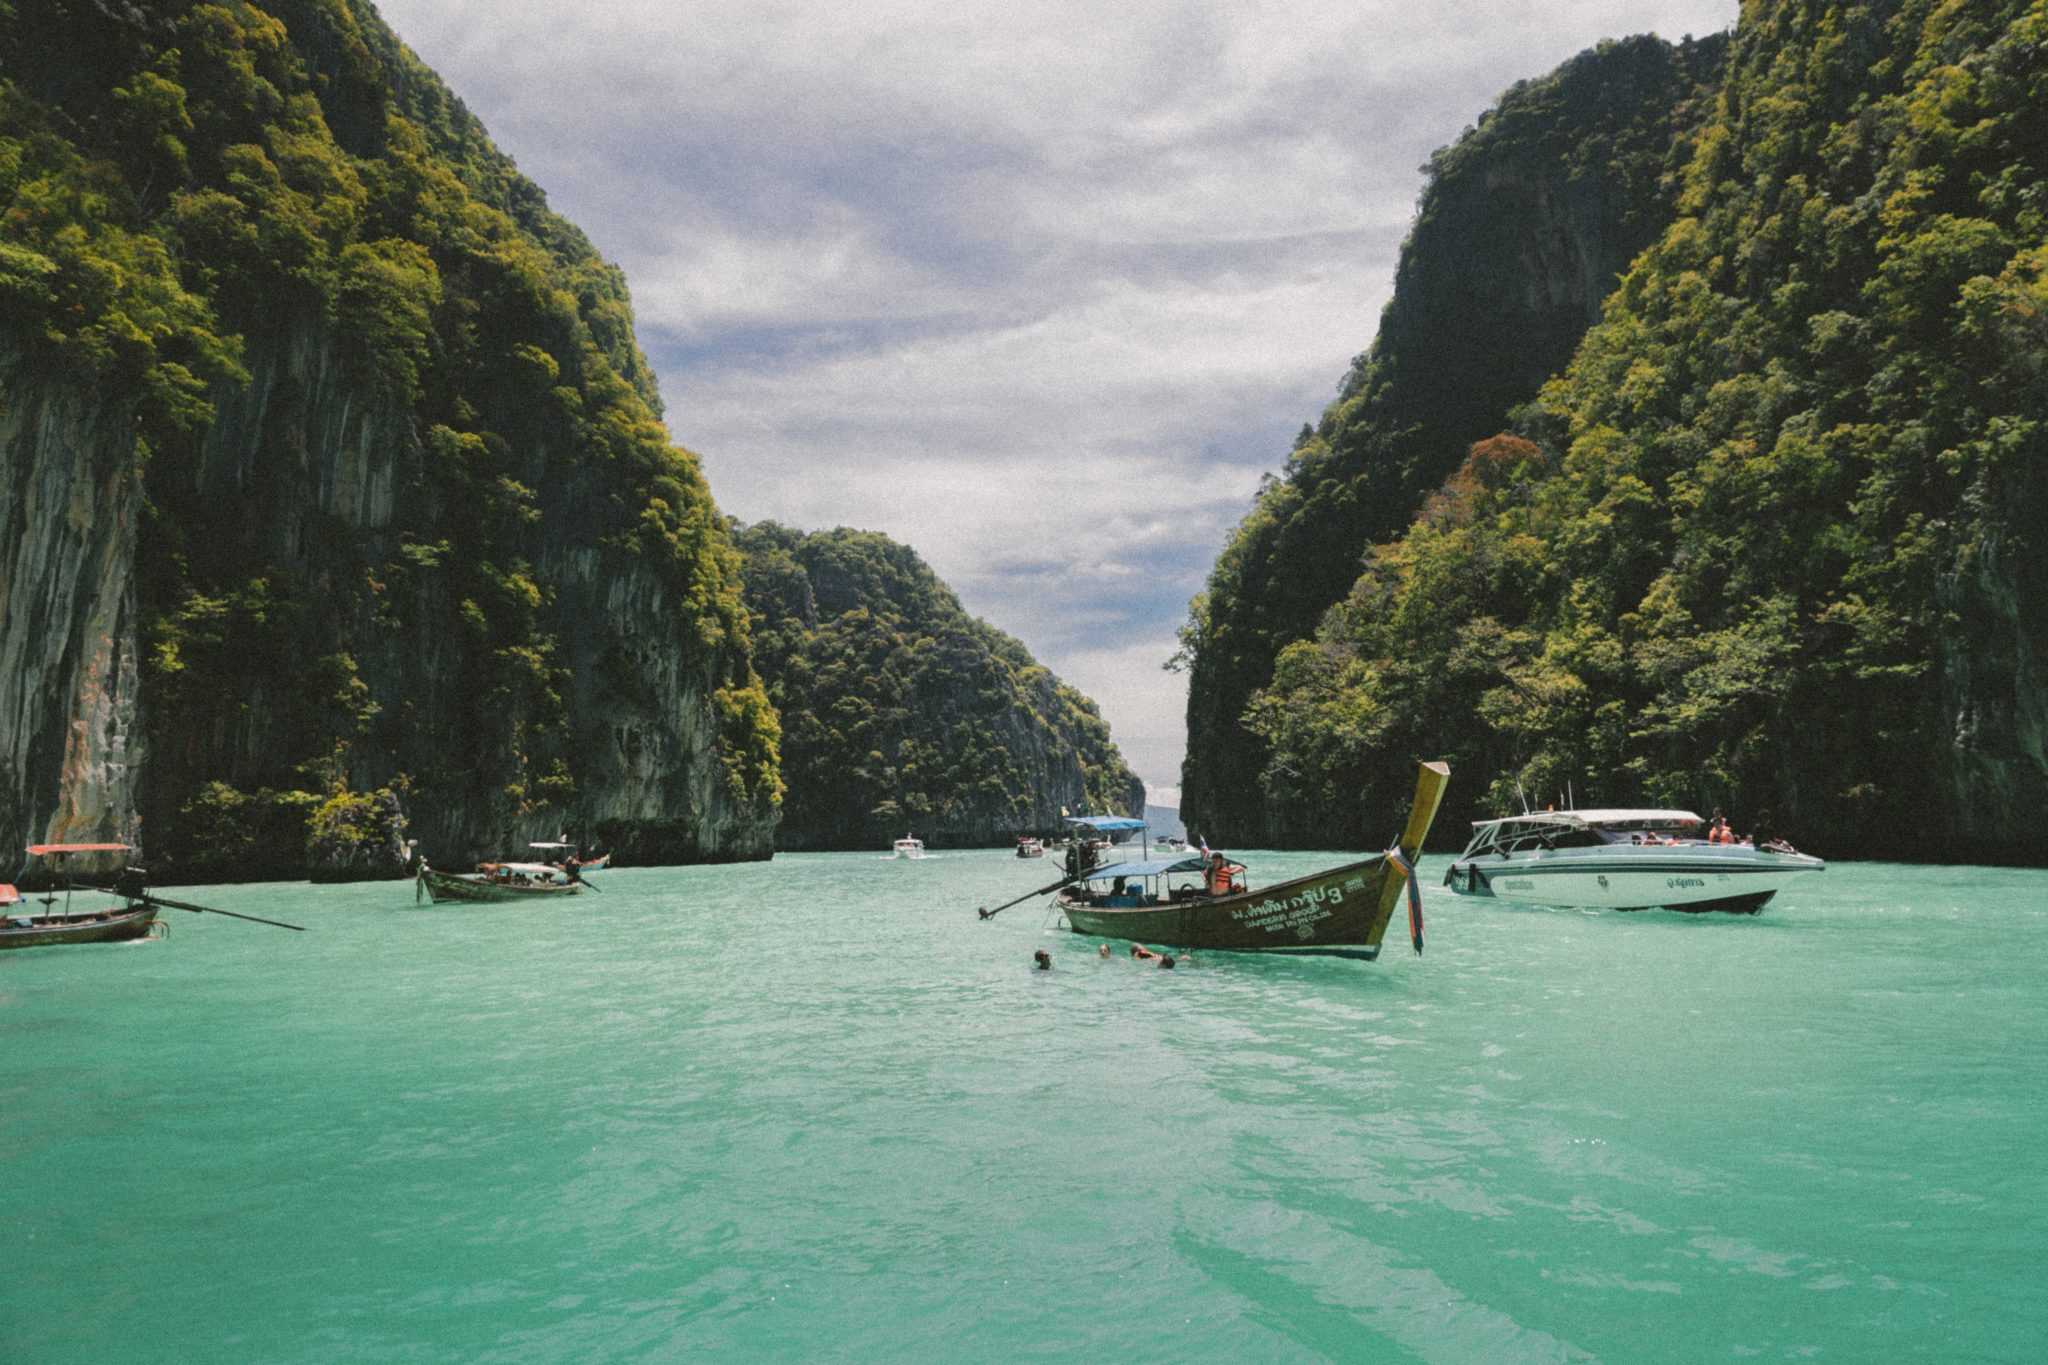 Tajlandia - co zobaczyć, kiedy jechać